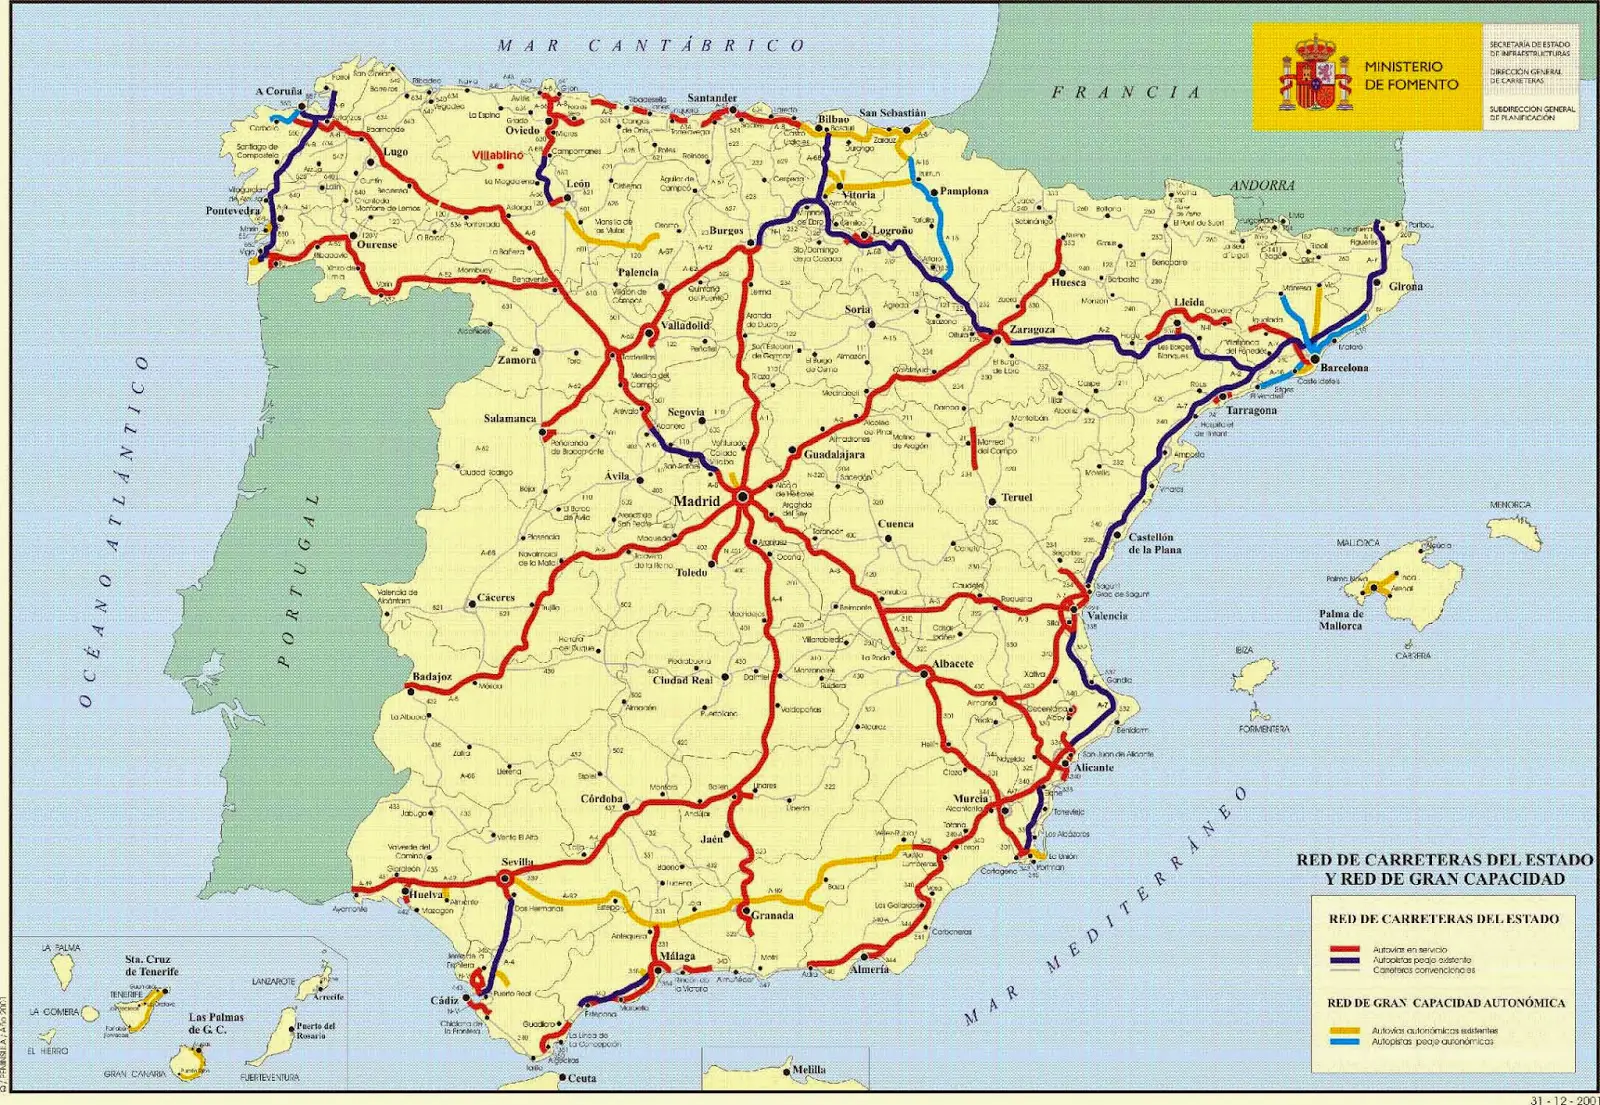 Mapa de Carreteras de España y Portugal MAPAS DE CARRETERAS